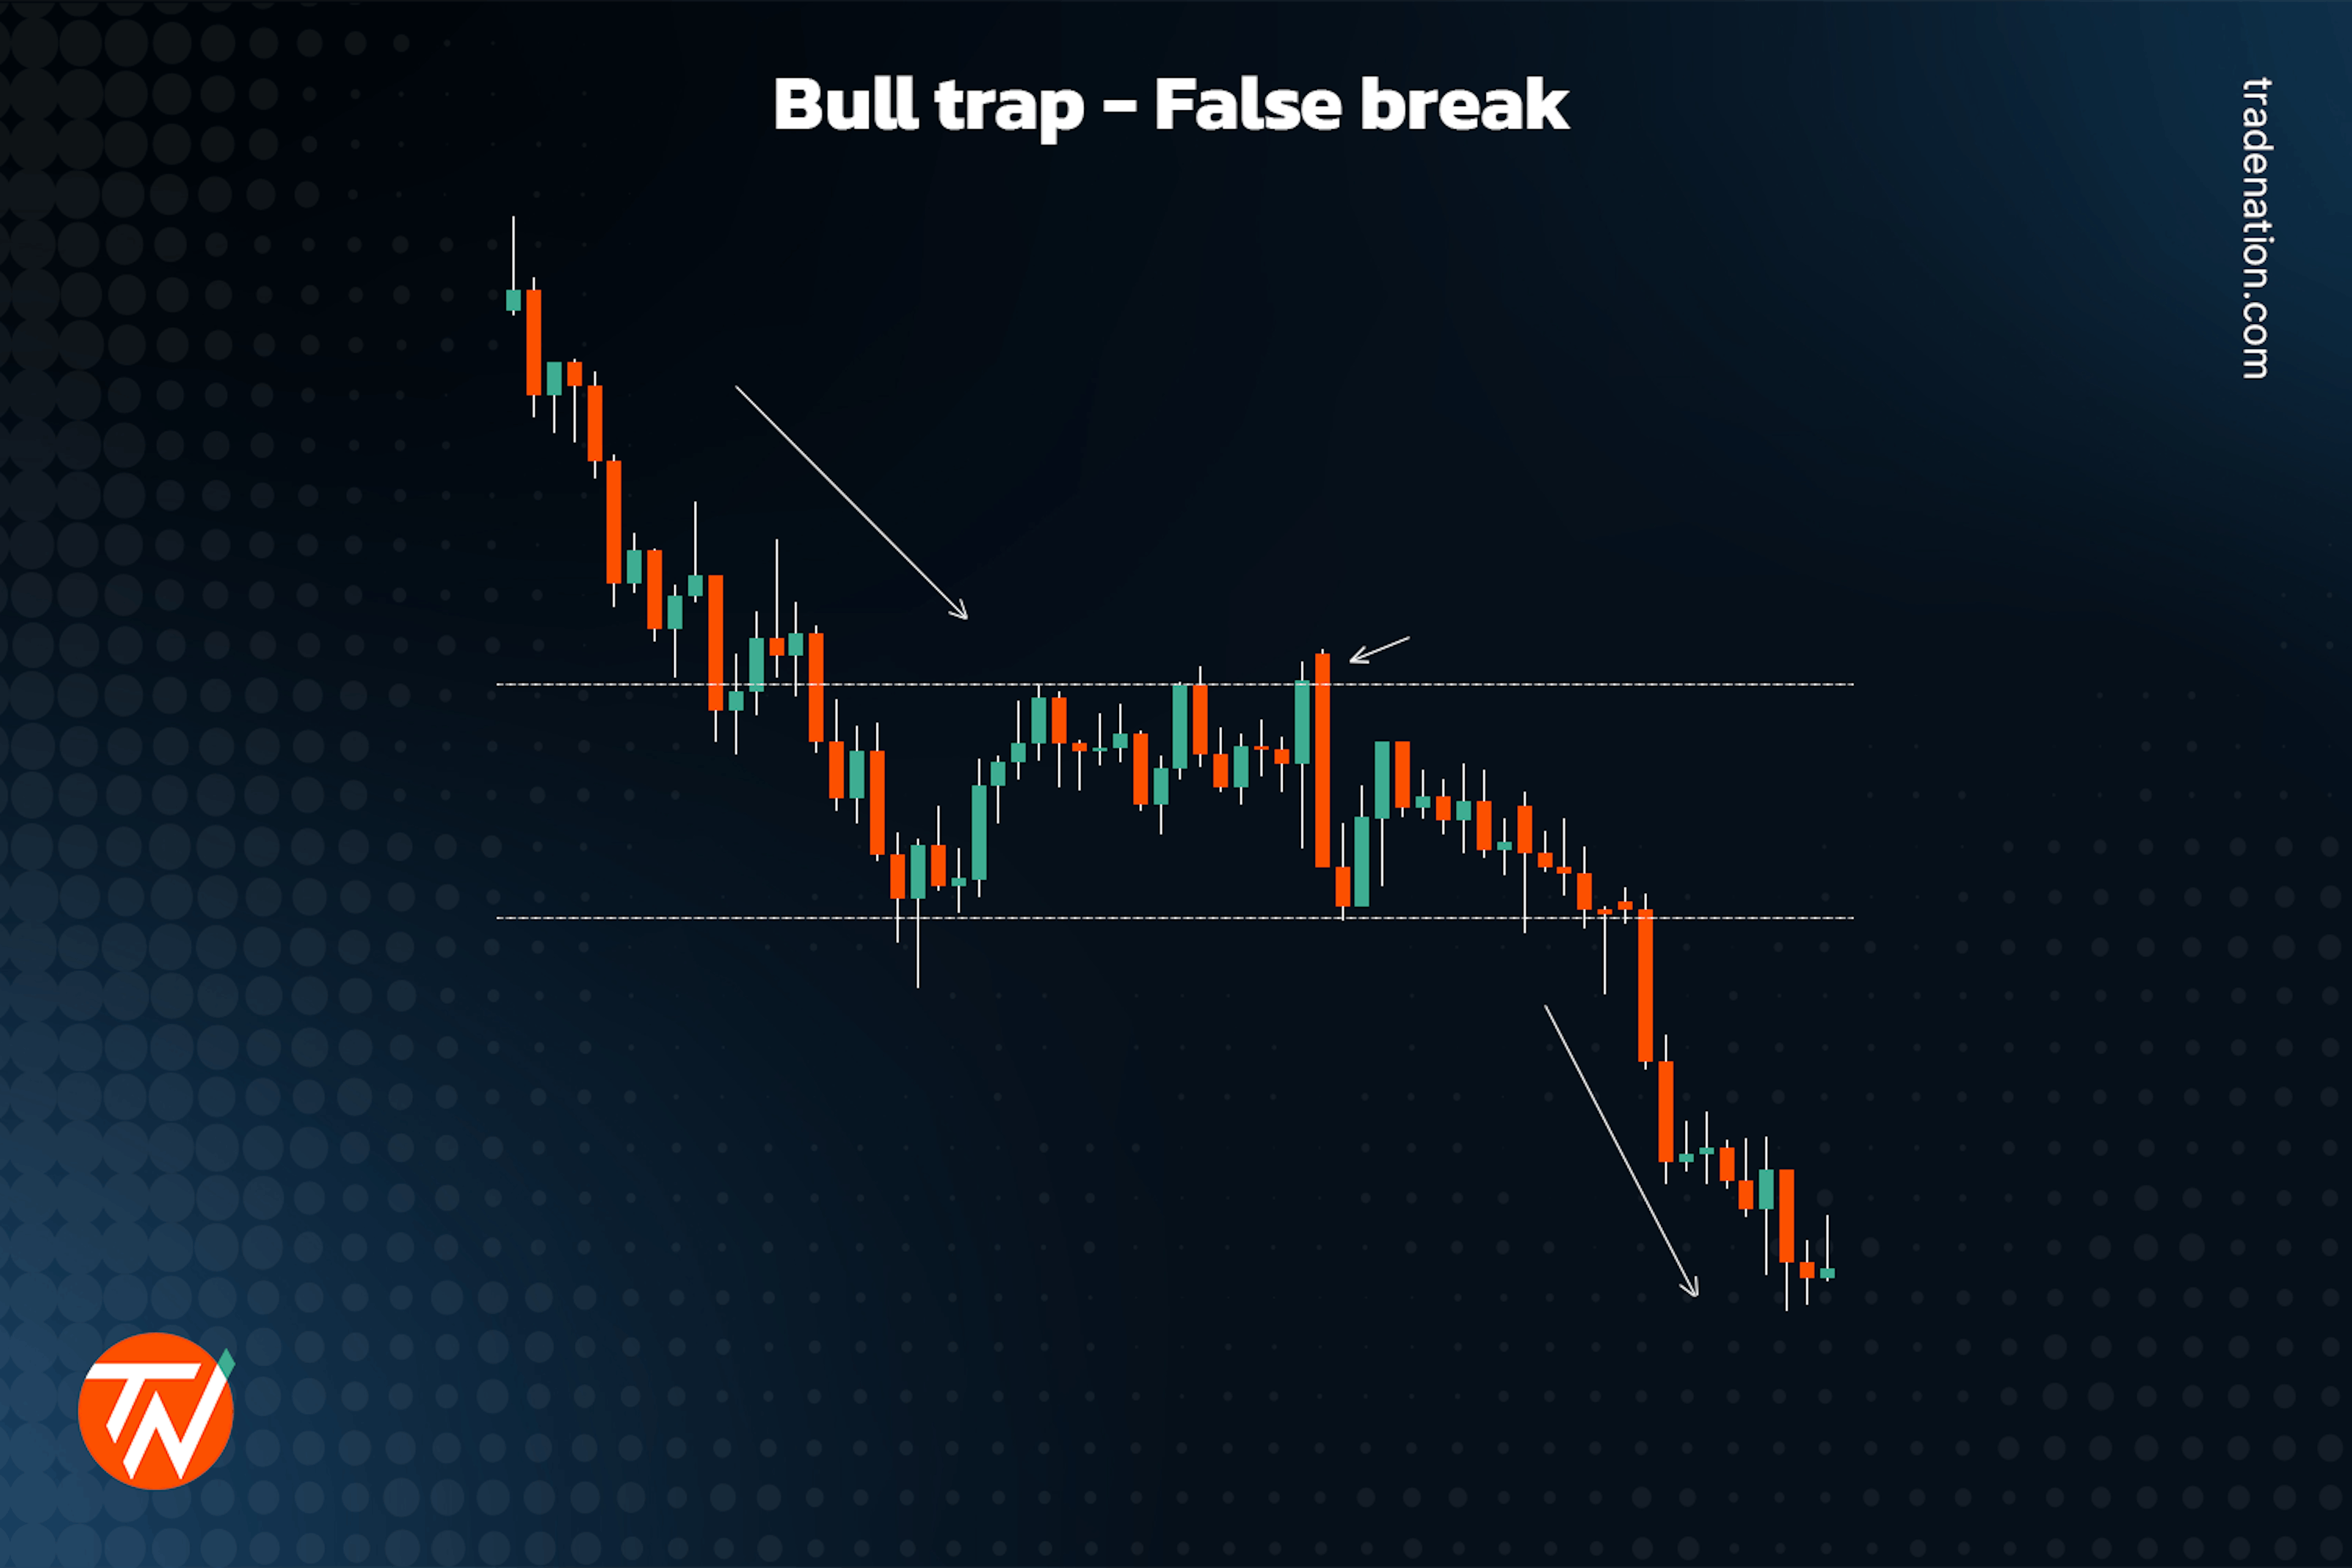 Bull trap false break in trading